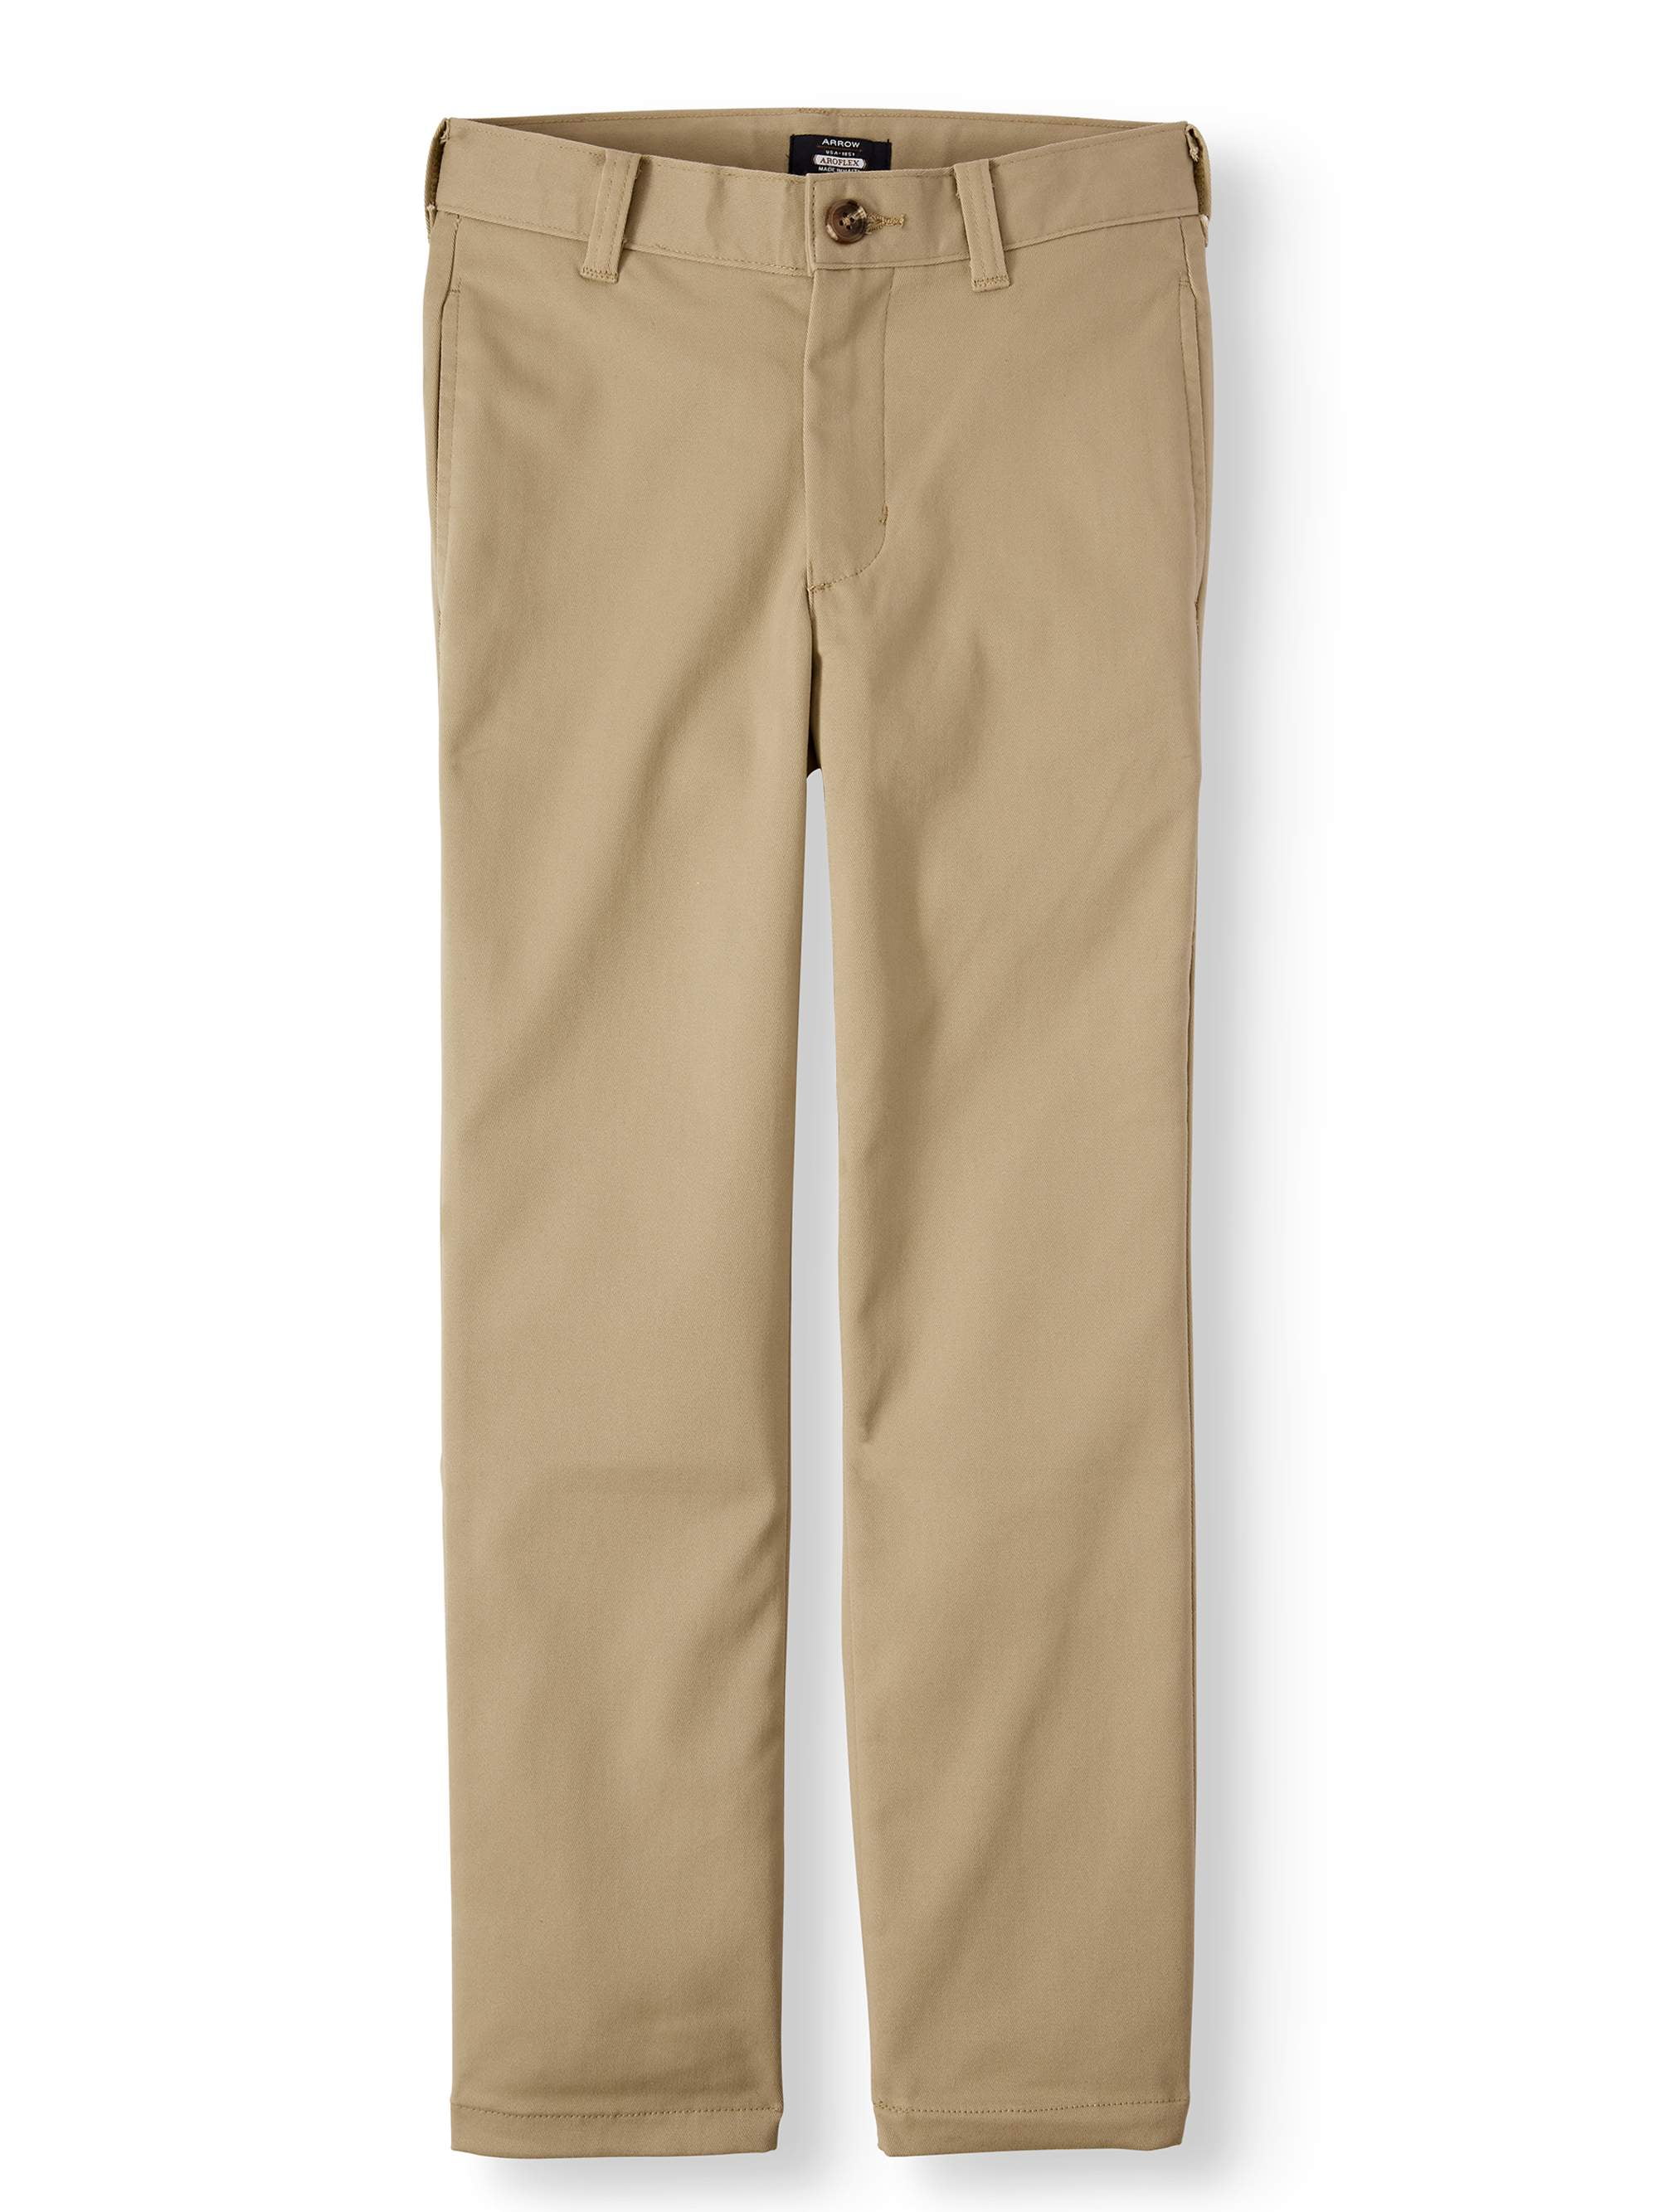 Khaki Arrow Boys Approved School Wear Flat Front Pants 